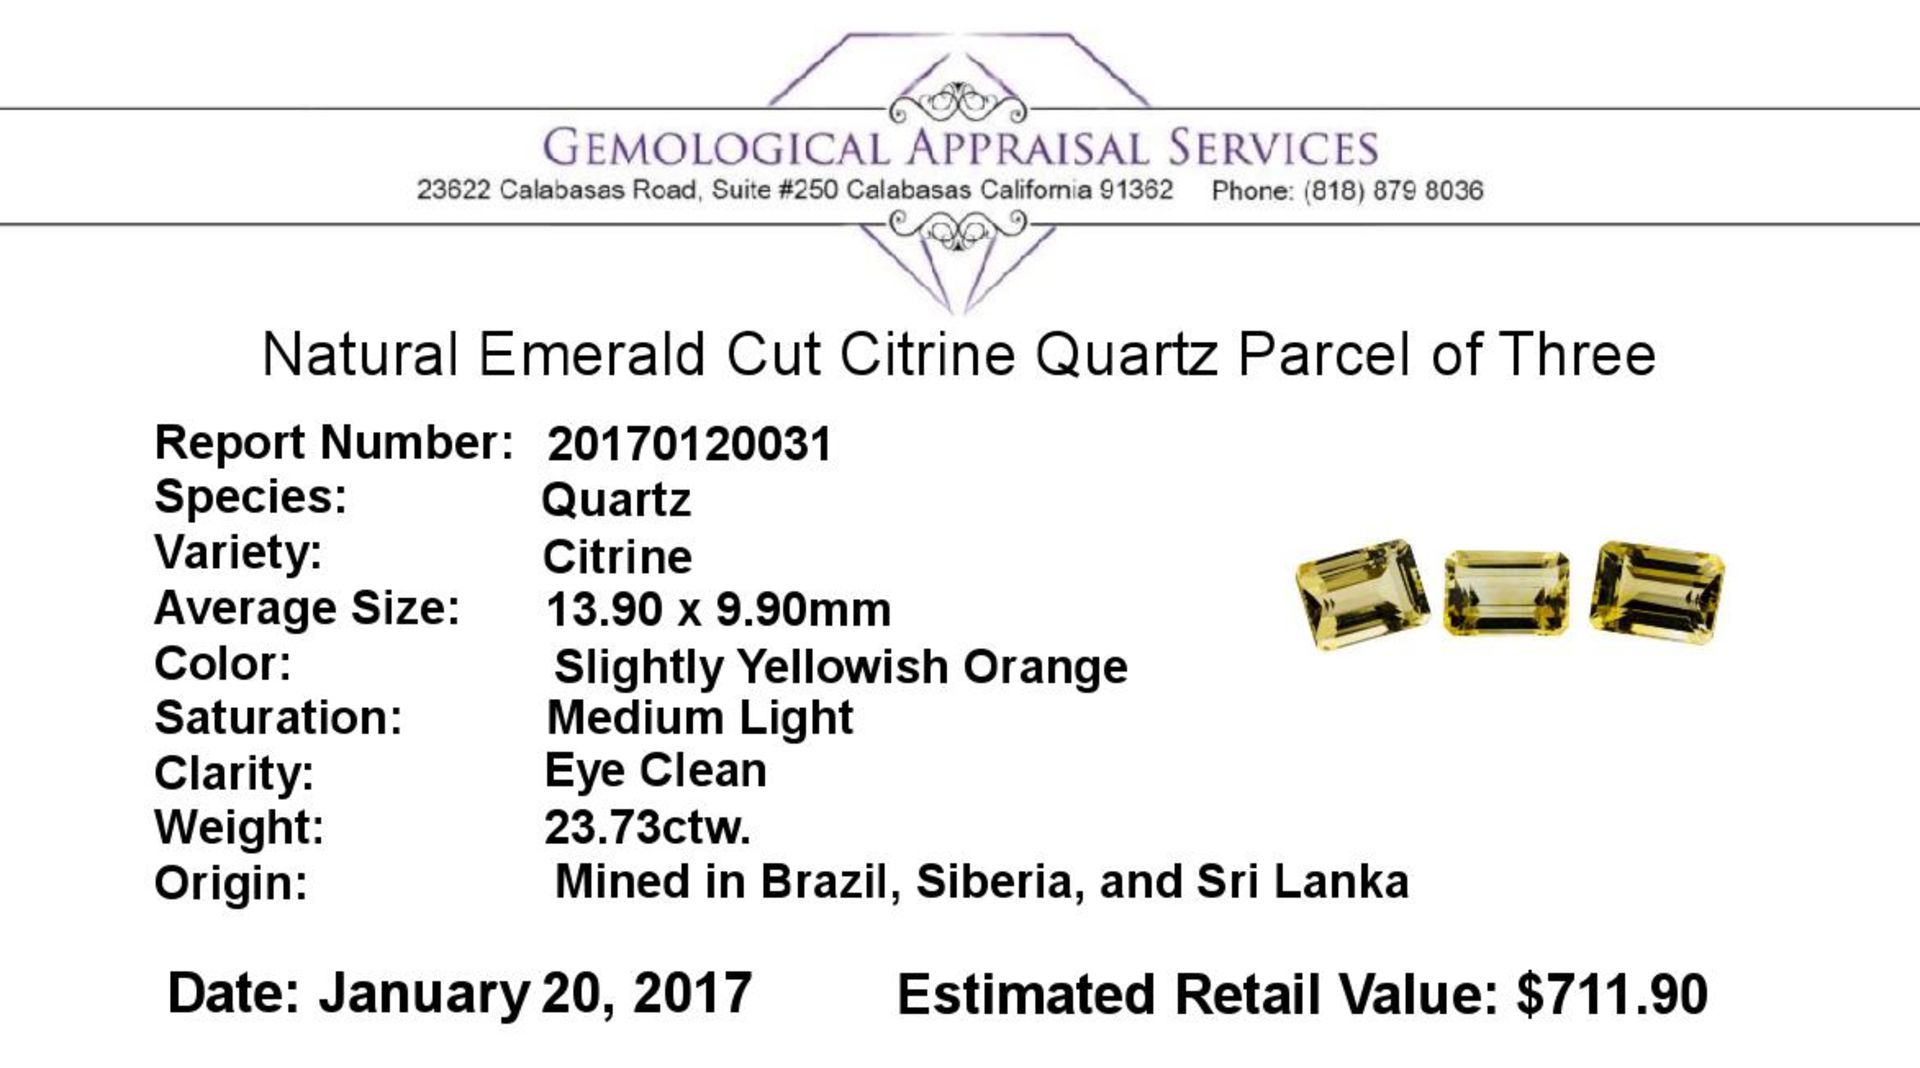 23.73 ctw.Natural Emerald Cut Citrine Quartz Parcel of Three - Image 3 of 3